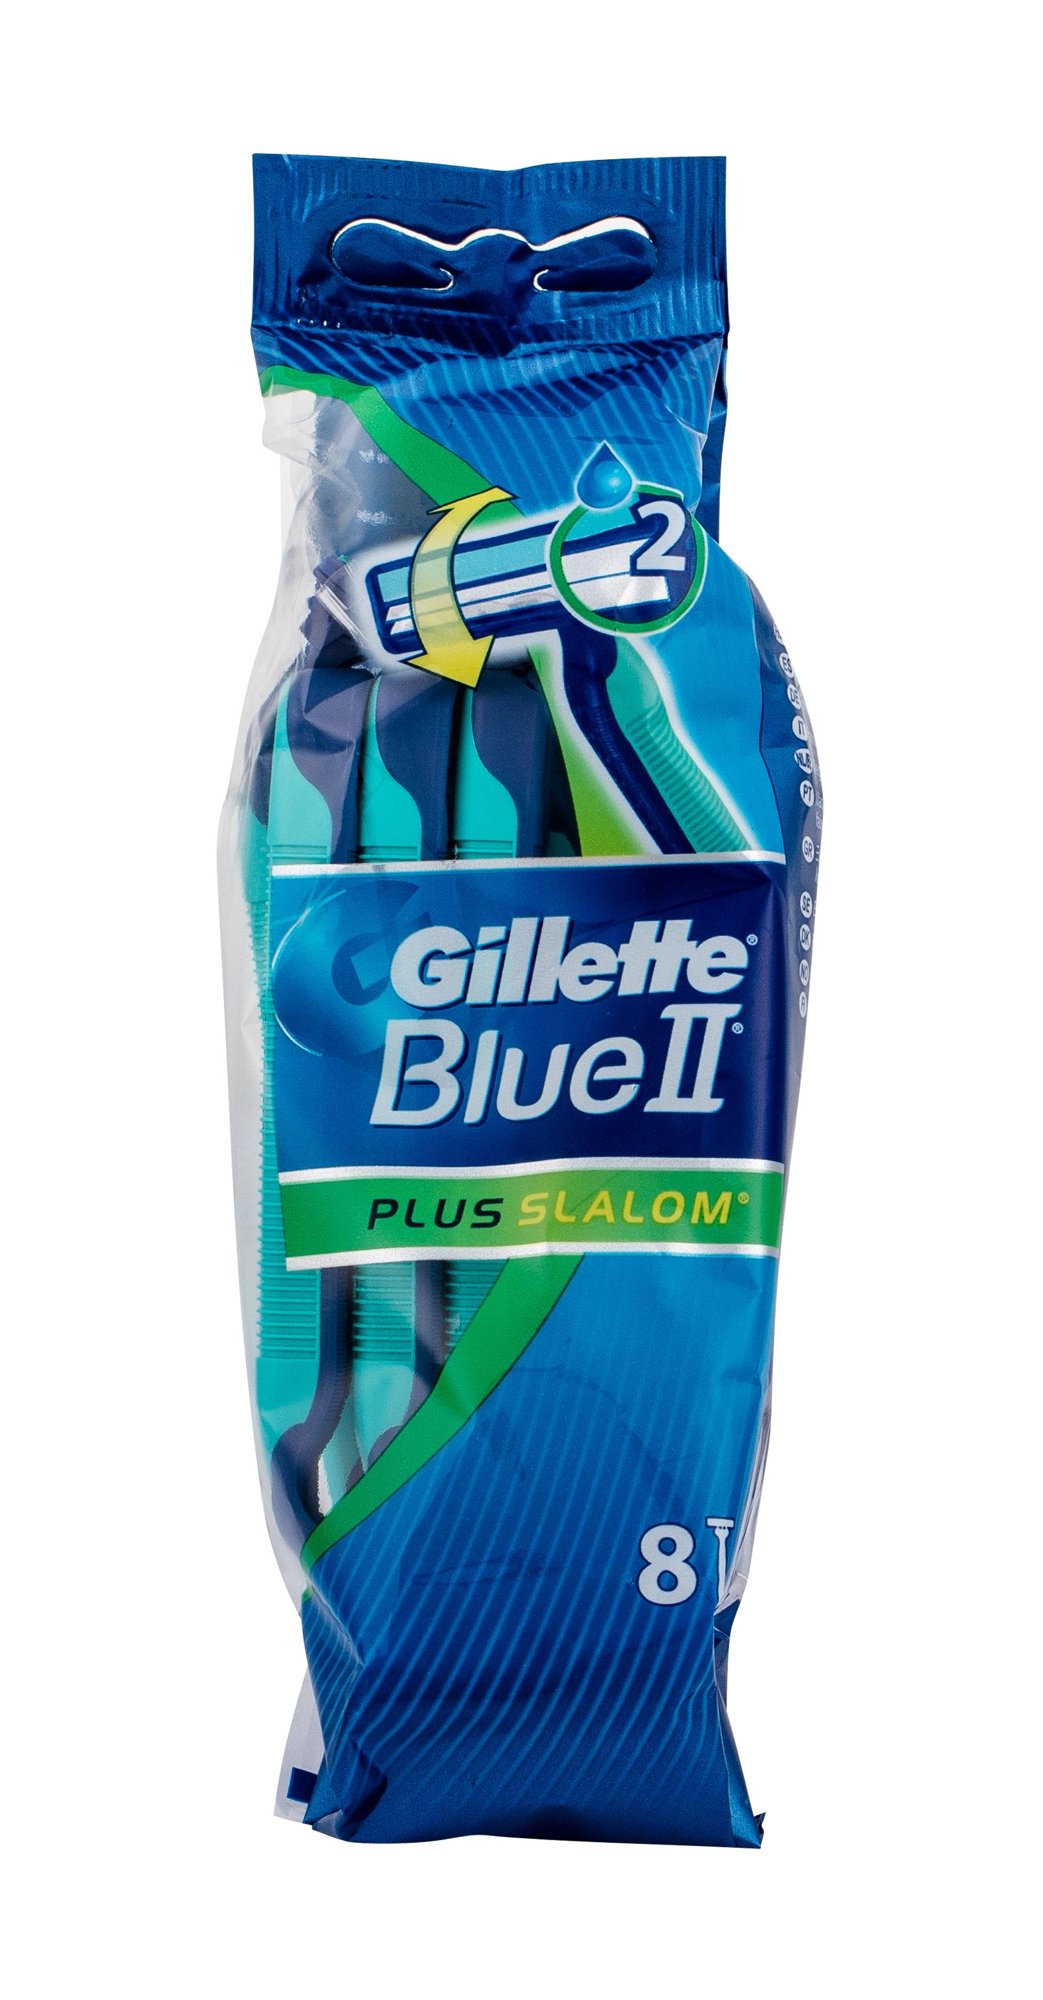 Gillette Blue II Plus Slalom skustuvas